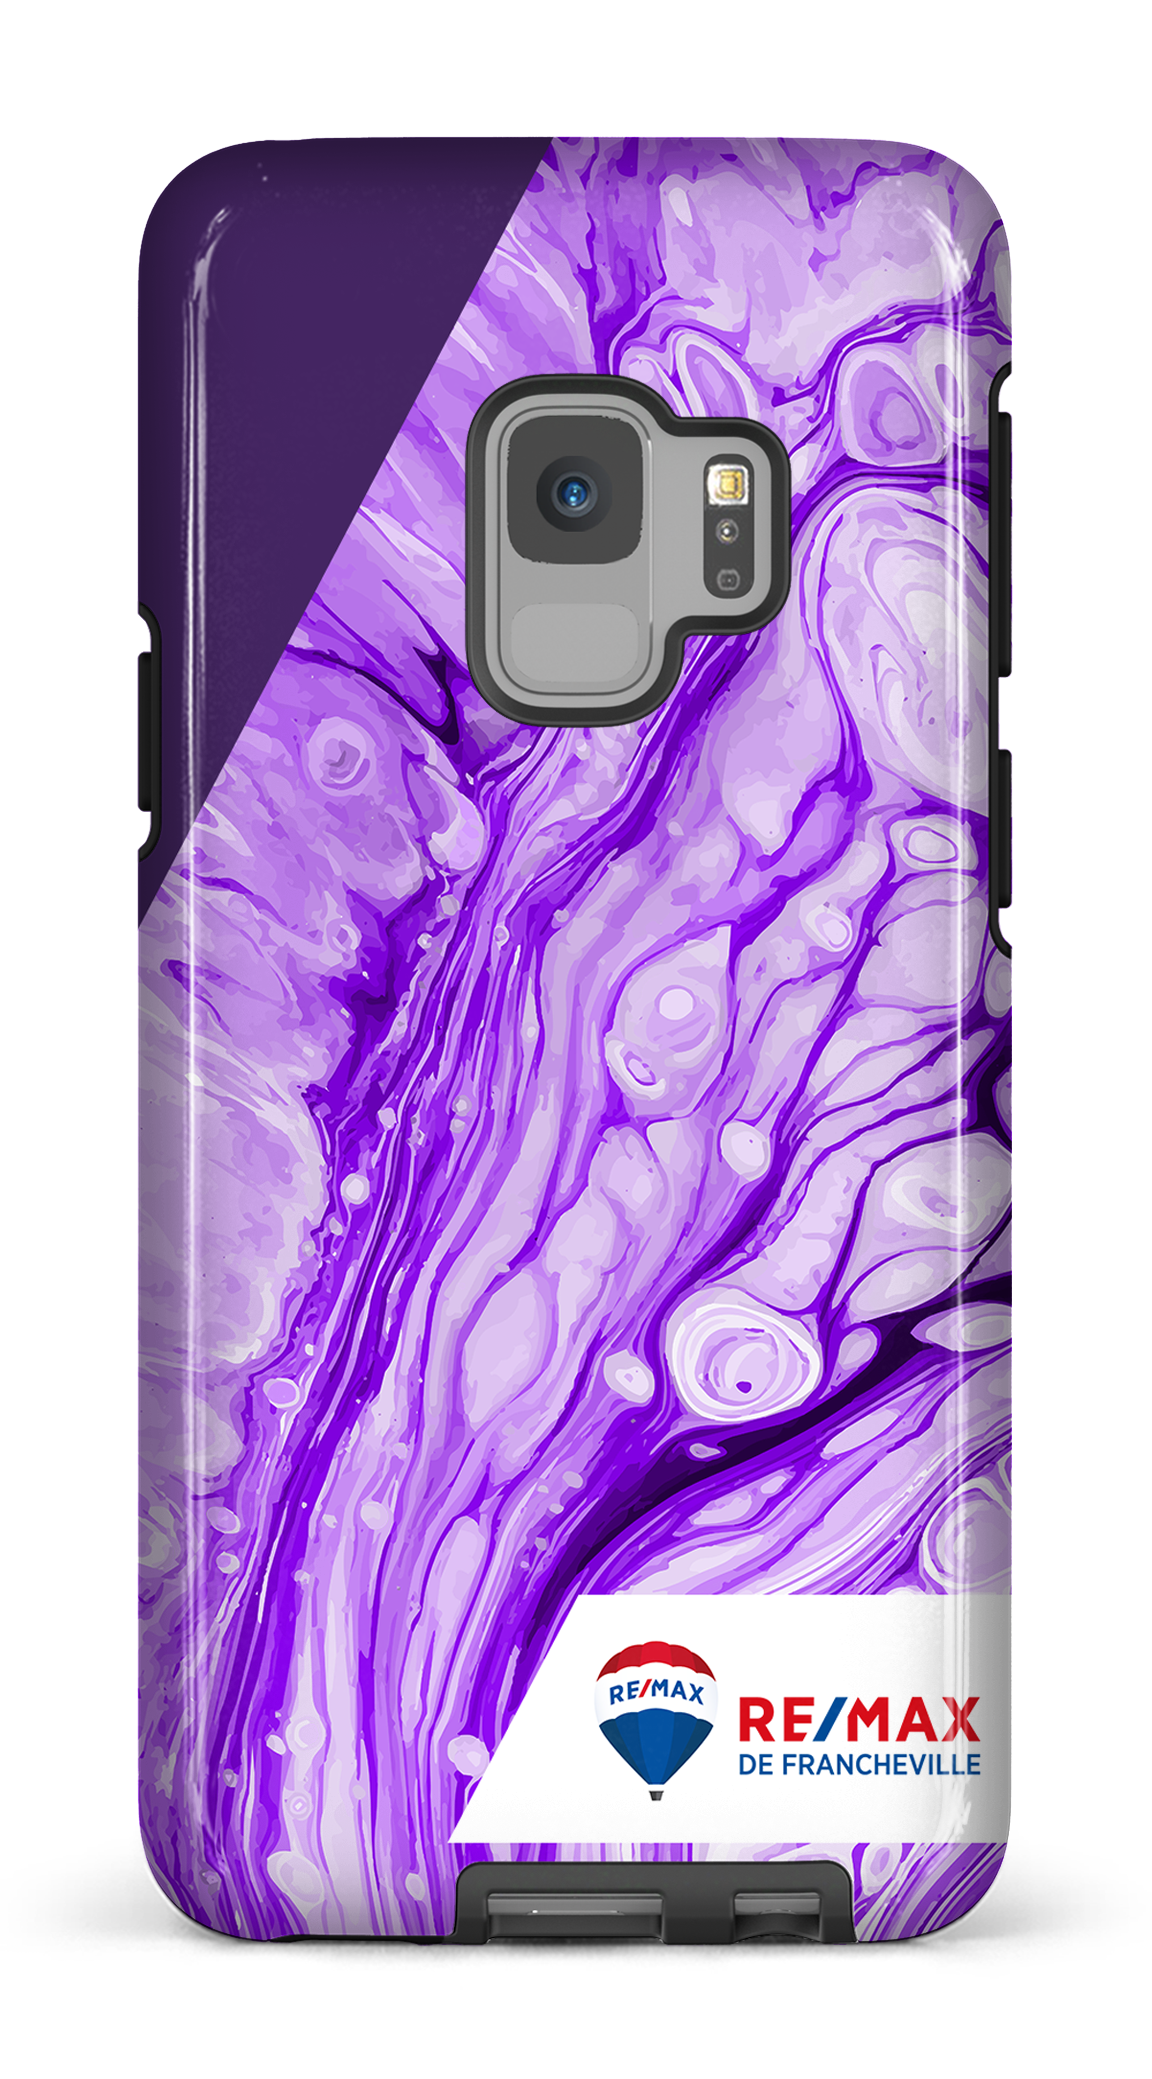 Peinture marbrée claire violette de Francheville - Galaxy S9